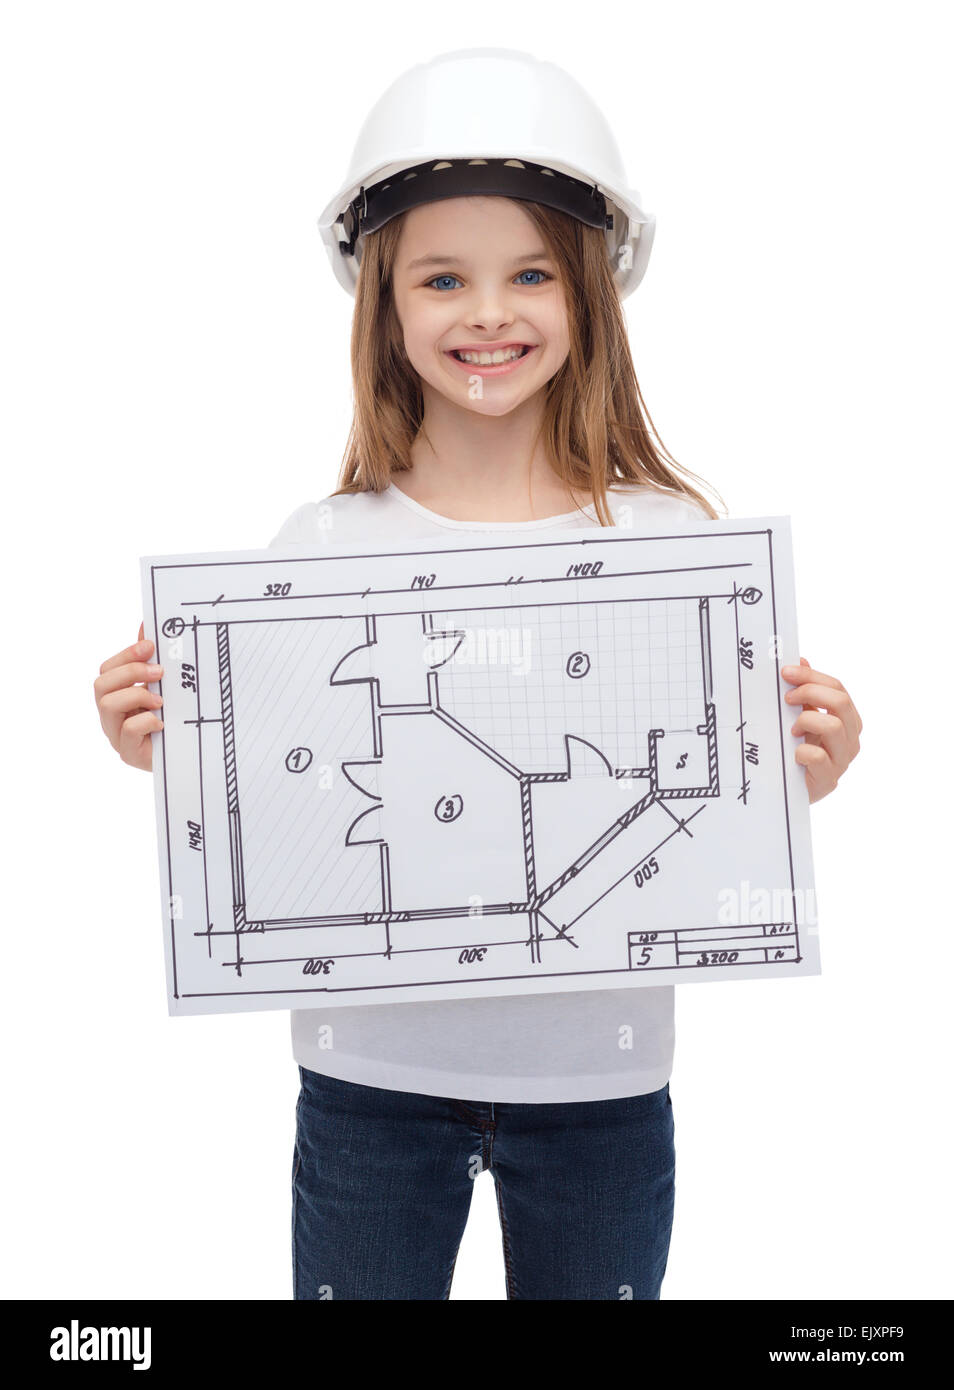 Arquitectura para niños Imágenes recortadas de stock - Alamy